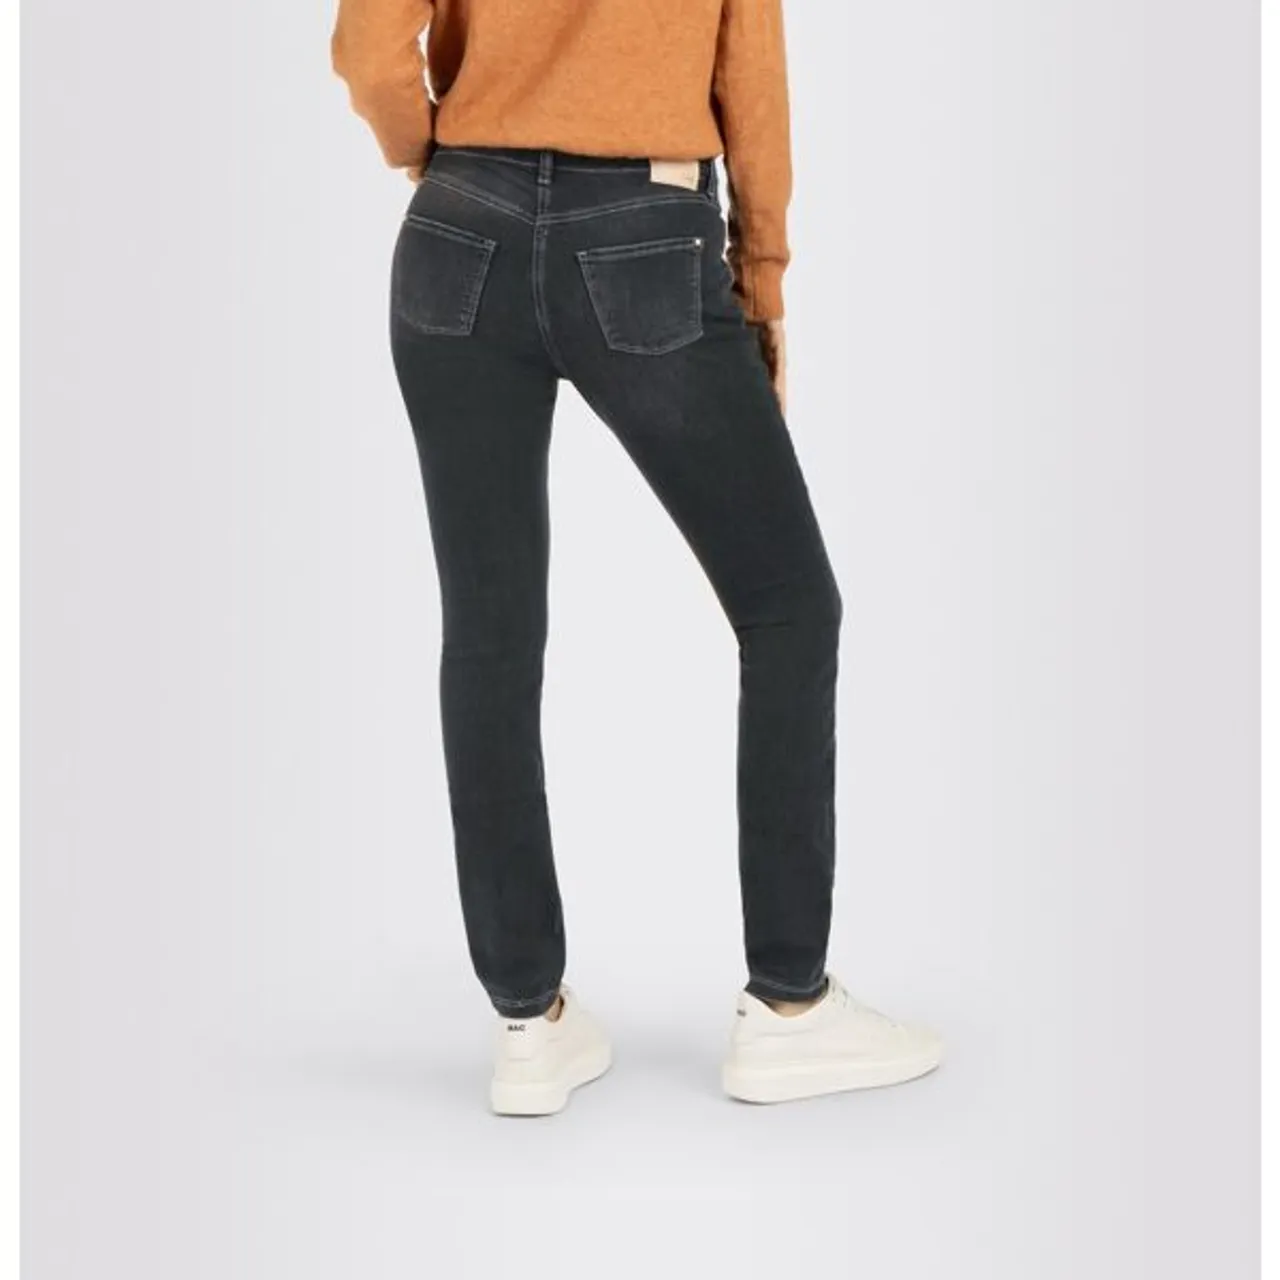 Skinny-fit-Jeans MAC "Dream Skinny" Gr. 34, Länge 28, schwarz (ash net wash) Damen Jeans Röhrenjeans Hochelastische Qualität sorgt für den perfekten S...